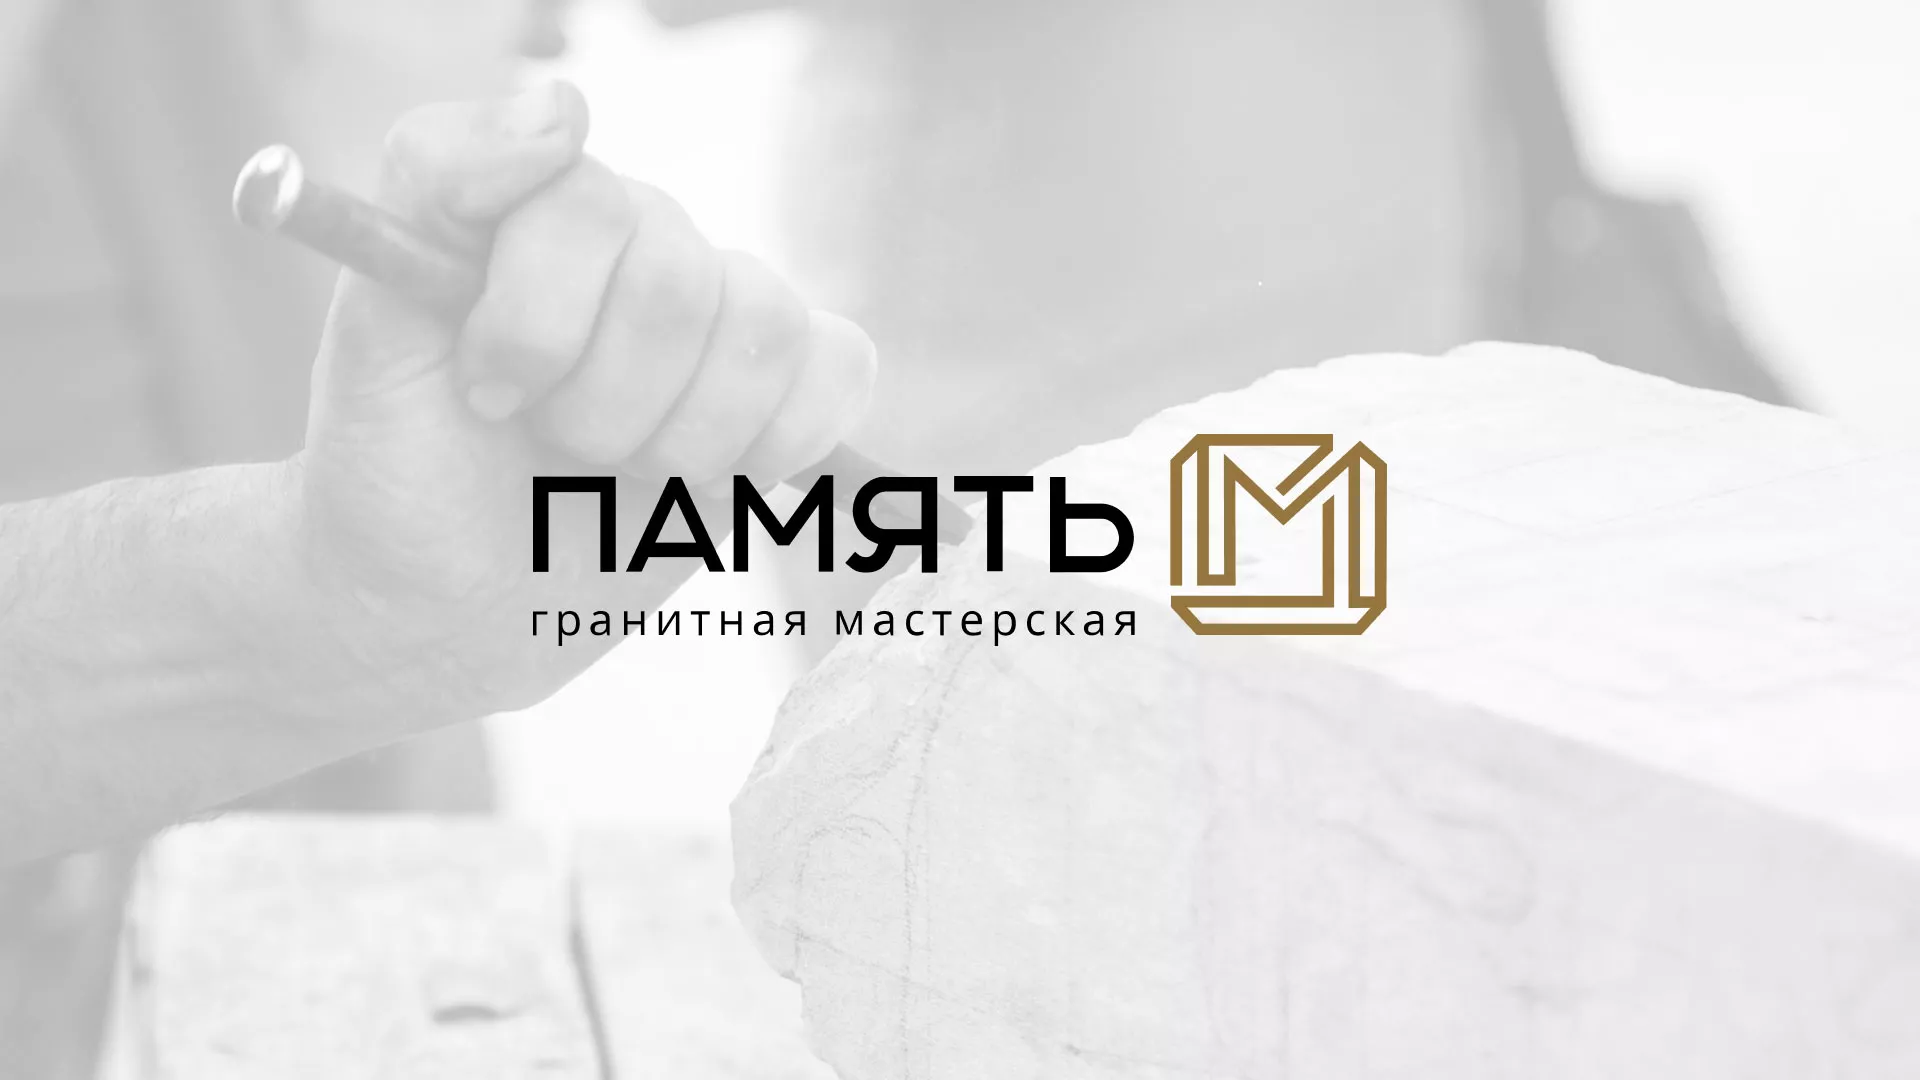 Разработка логотипа и сайта компании «Память-М» в Улане-Удэ